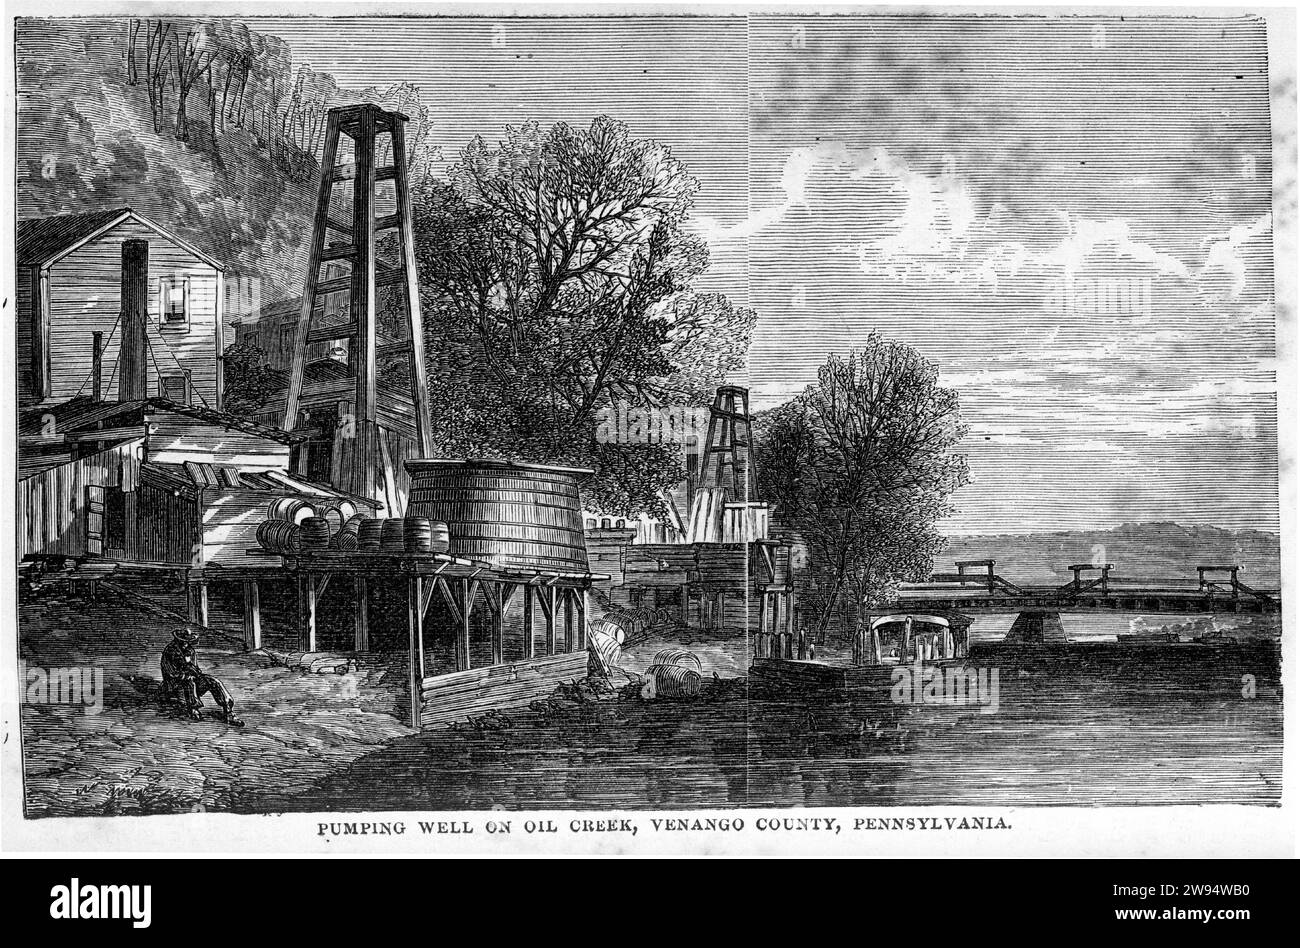 Gravure d'un puits de pompage sur Oil creek, comté de Venango, Pennsylvanie, vers 1880 Banque D'Images